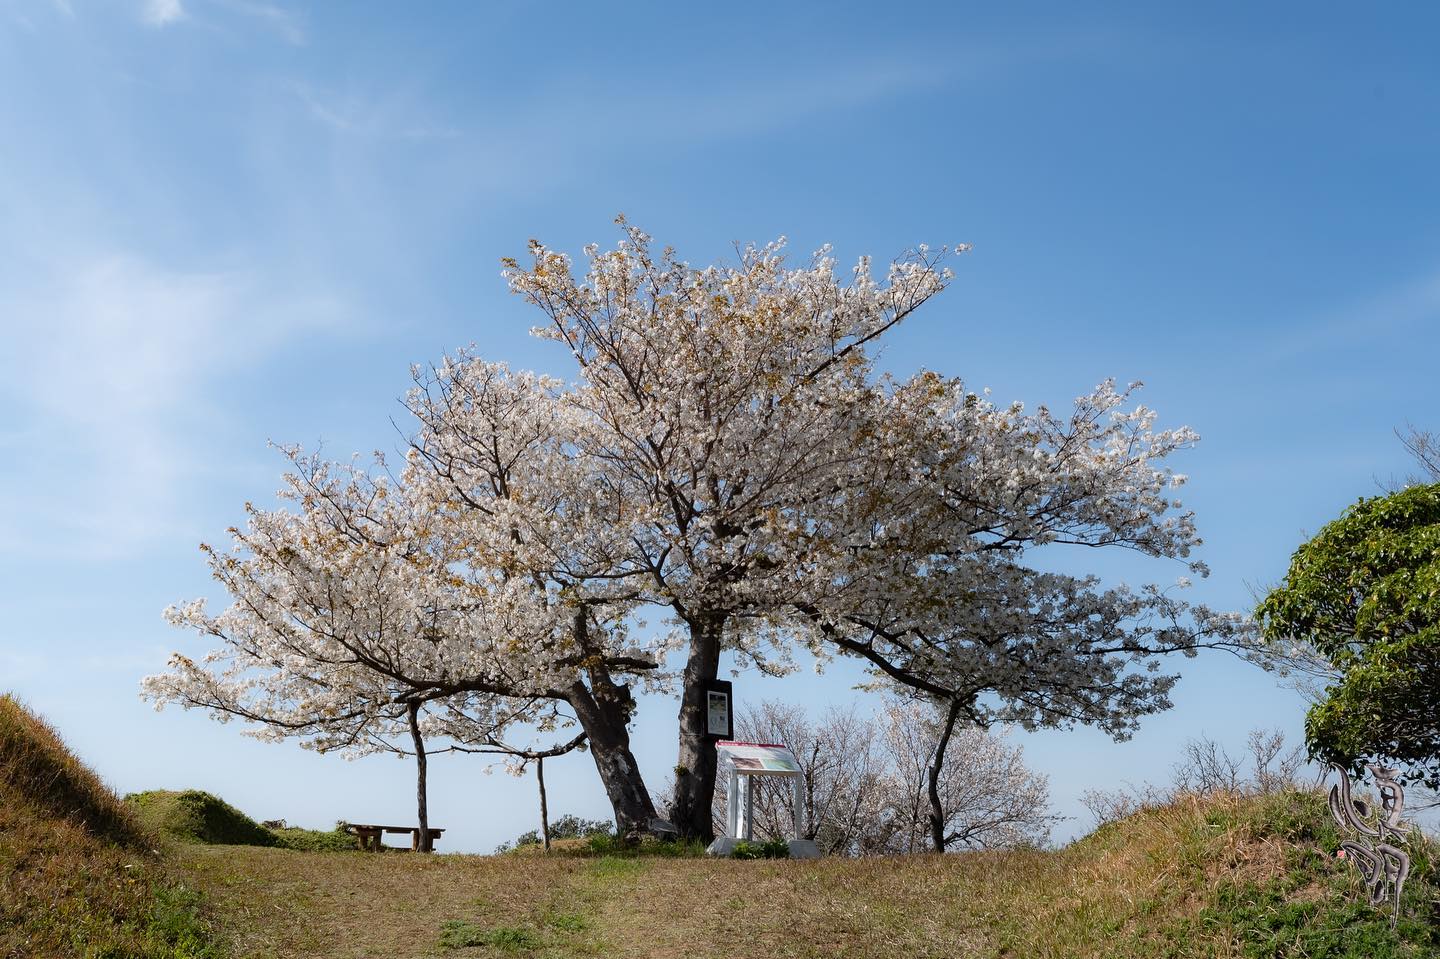 Instagram更新しました。 eg. 雑賀崎の１本桜こんにちは。「想いをカタチに」 和歌山の小さな写真屋･はれのひ工房のカメラマンの末藤（スエトウ）です。今日ご紹介するのは雑賀崎にある１本桜です。雑賀崎のトンガの鼻（雑賀崎台場）の丘の上に存在感のあるオオシマザクラがあります。真っ白な花を咲かせて地元の方などがお弁当を持って花見されています。雑賀崎と和歌浦は日本遺産に登録されたのをきっかけに整備が進みましたが、このオオシマザクラは昔から地元の方やトンガの鼻自然クラブ、関係者の方々が大切に見守ってこられたサクラです。近くに行くとみんな嗅いだことがある匂いが強く漂っています。そうです桜餅の匂いです。オオシマザクラは日本の桜の原種の一つで葉っぱの香りが強く、好んで桜餅に使われるそうです。七洋園の隣が入り口で駐車場になっています。そこから歩いて5分ほどです。野犬が多いので気をつけて下さい。野犬も人間が怖いですから、追い込んだり急に逃げたりしてビックリさせない限り噛まれることは無いでしょう。雑賀崎の歴史と共にたのしめる桜です。 – from Instagram